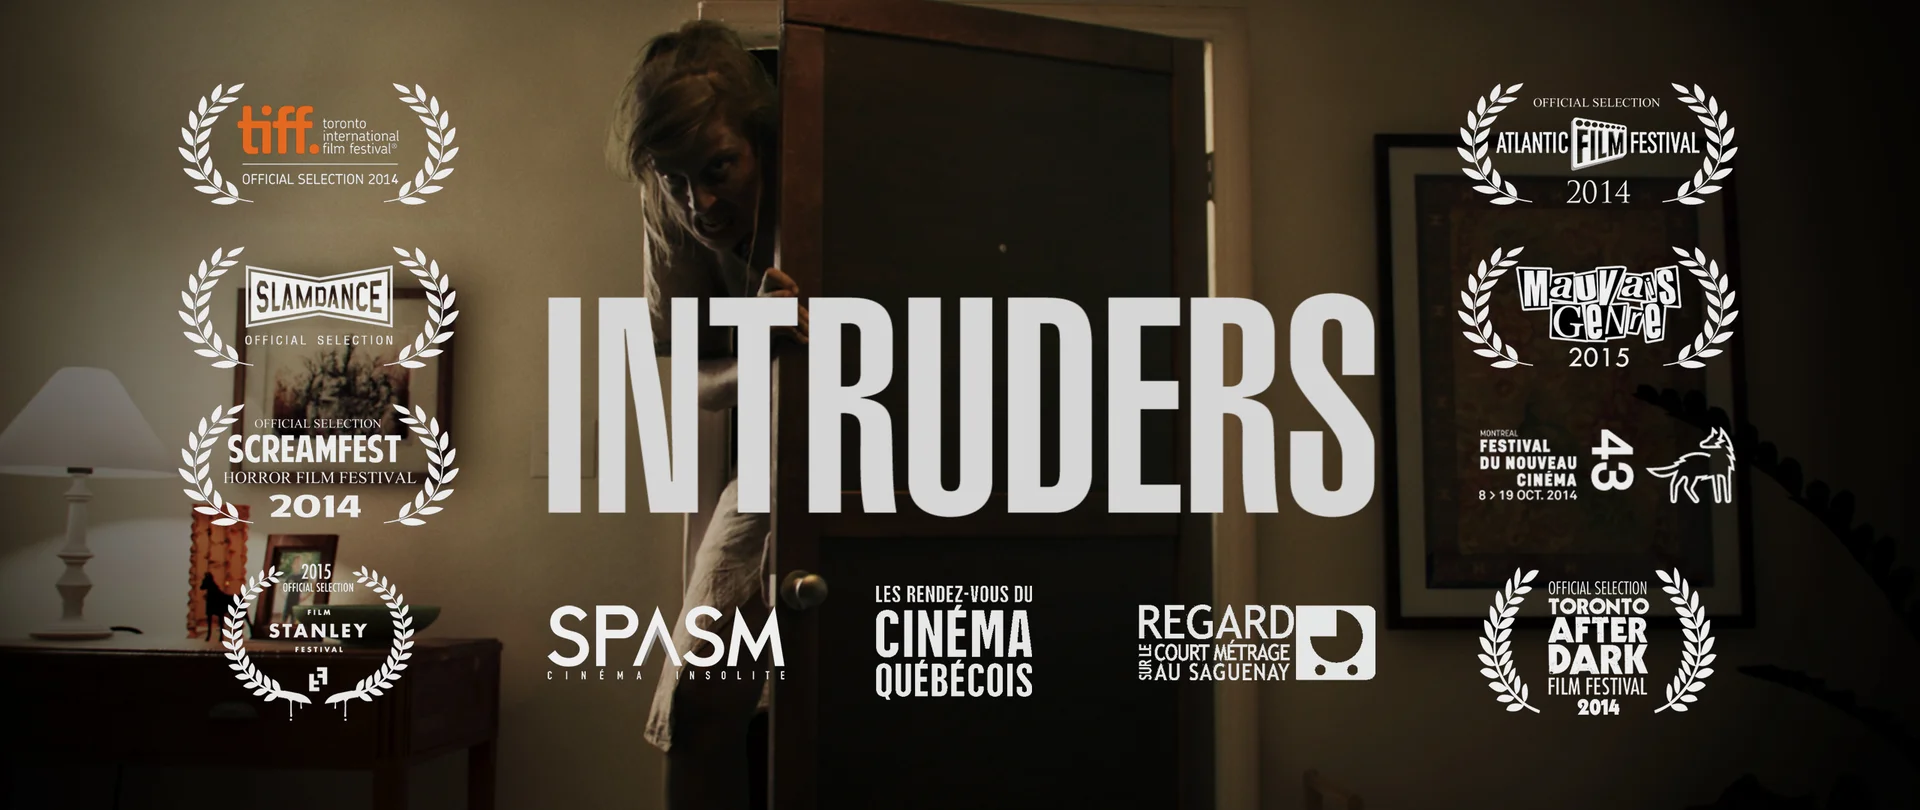 INTRUDERS Trailer  Festival 2014 